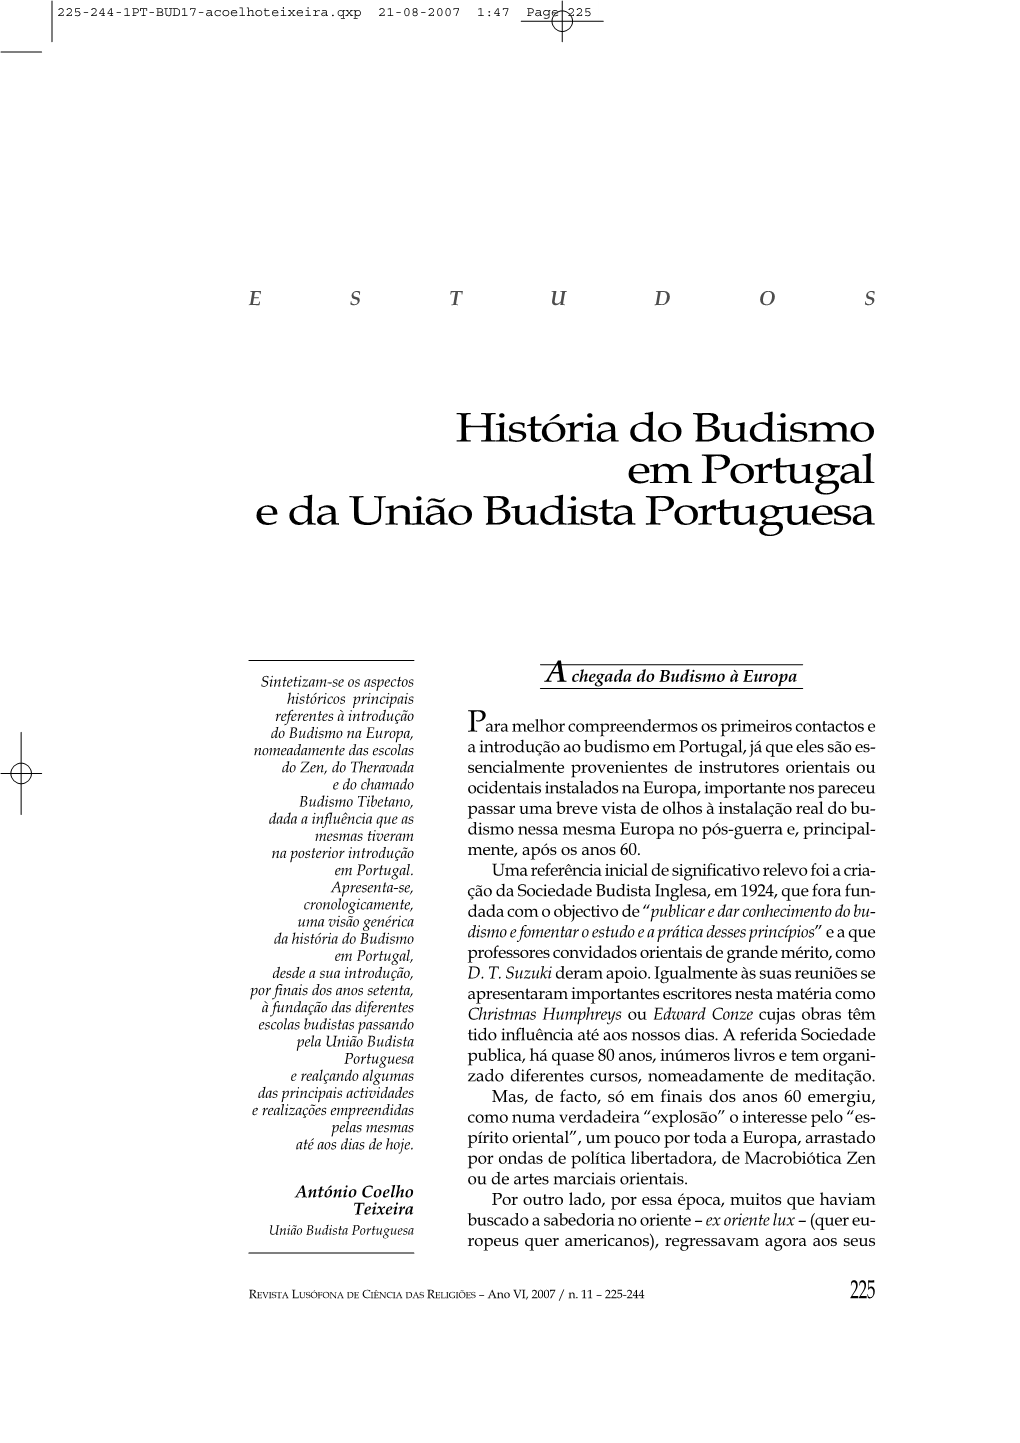 História Do Budismo Em Portugal E Da União Budista Portuguesa